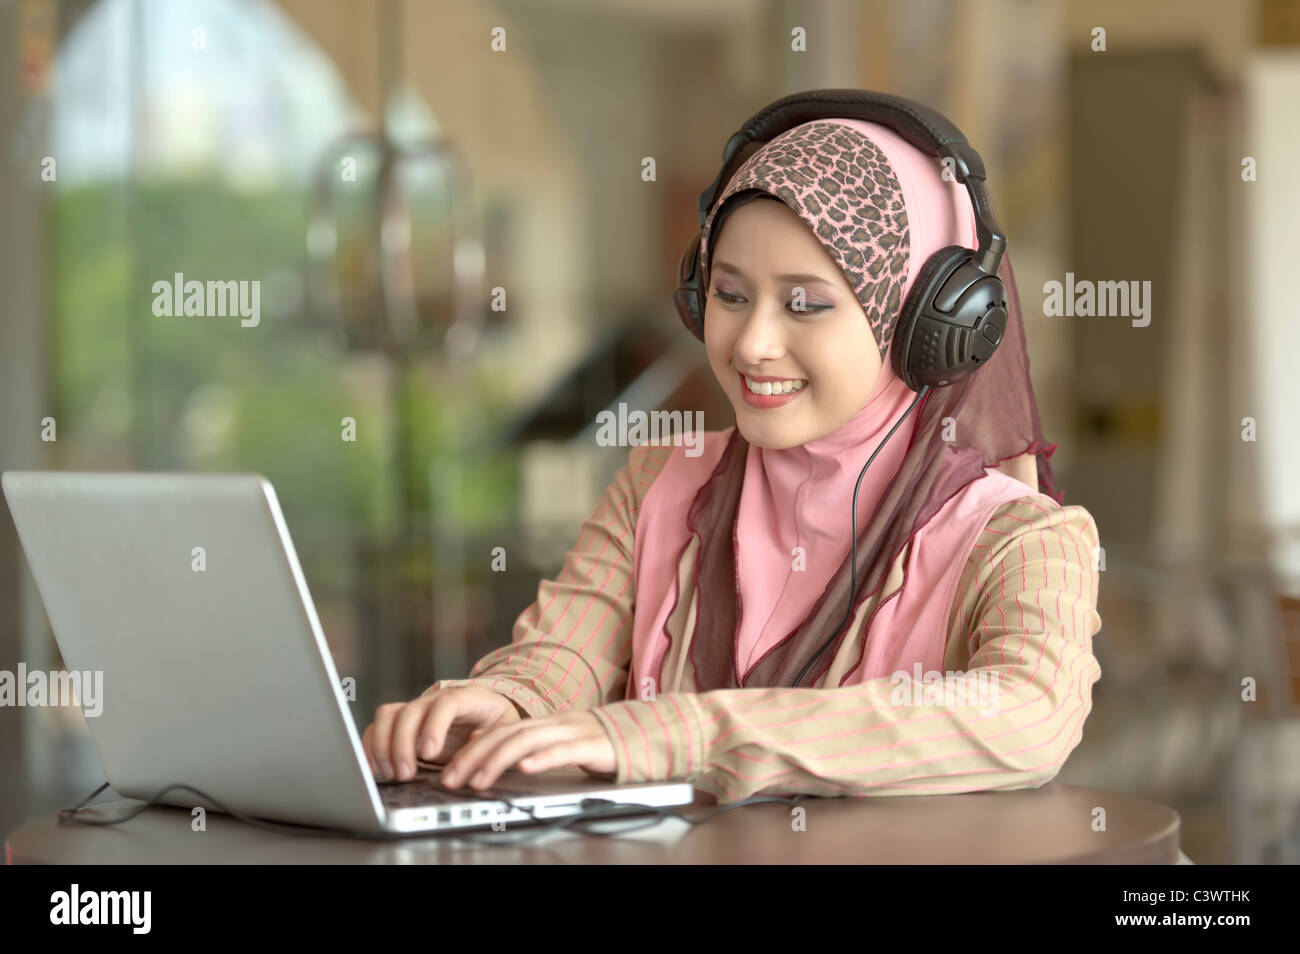 Giovani asiatici bella donna musulmana in testa sciarpa ascolta audio con testa il telefono mentre si lavora sul computer portatile in cafe Foto Stock